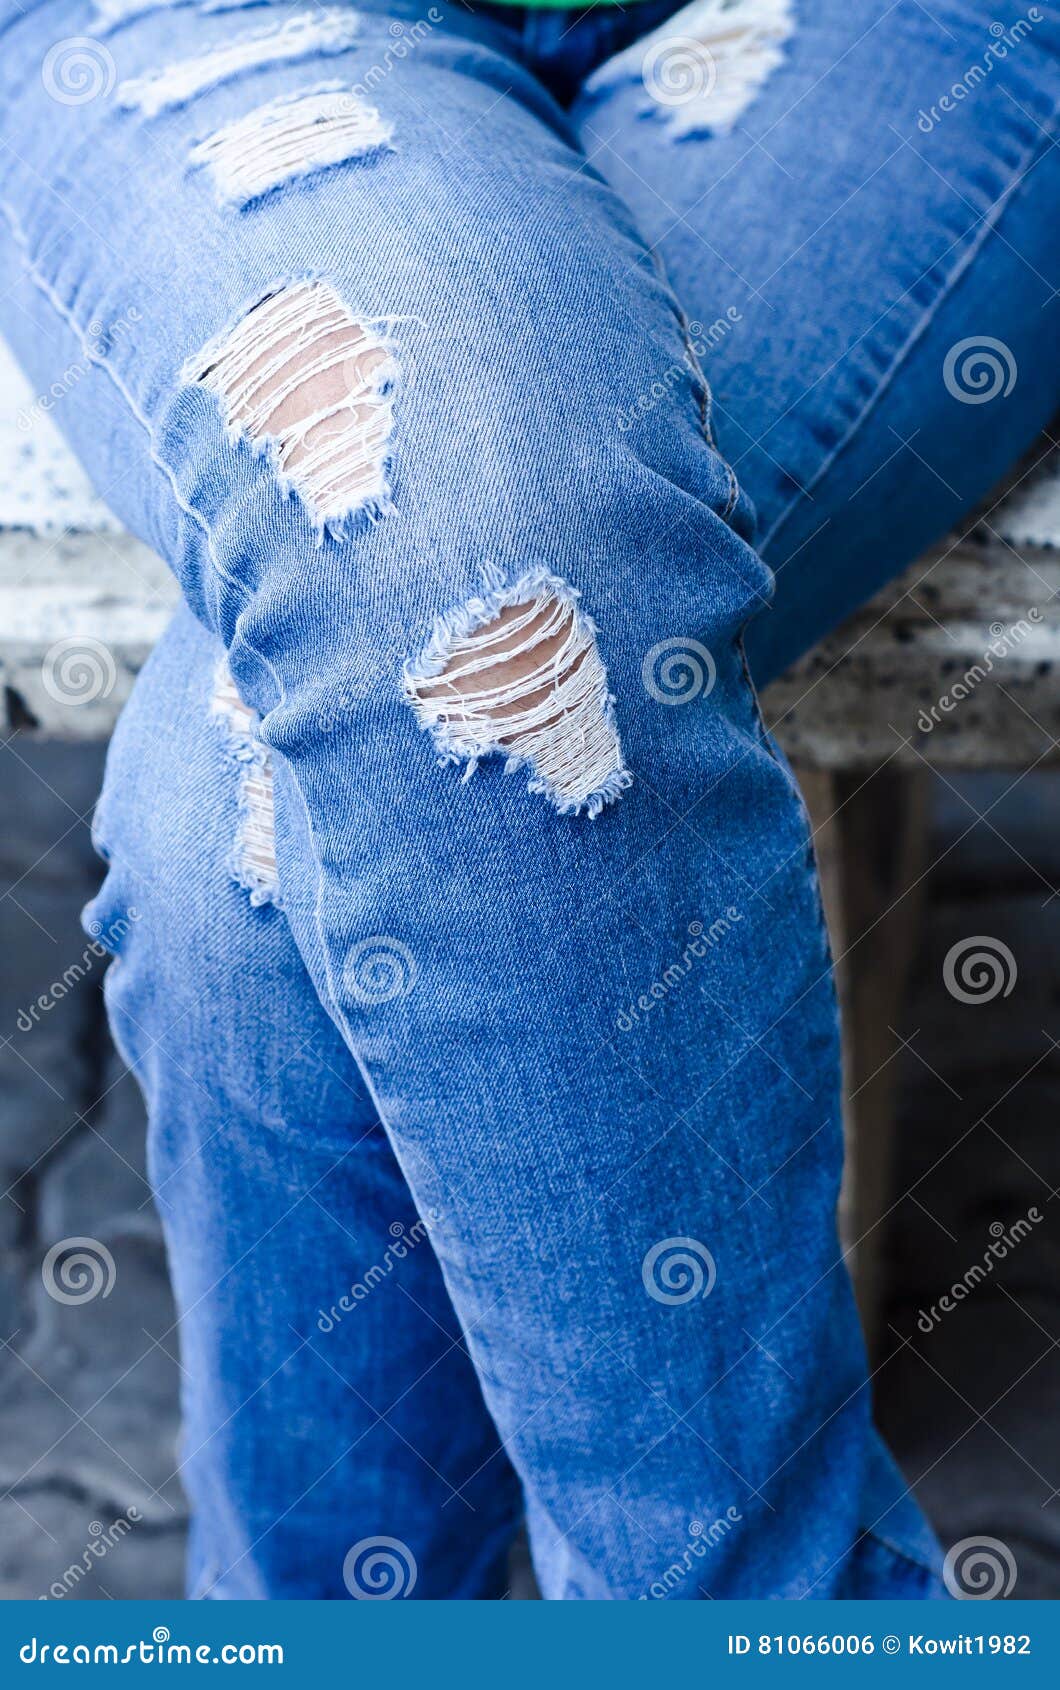 Jeans Background Texture,Denim Jeans Texture or Denim Jeans Background ...